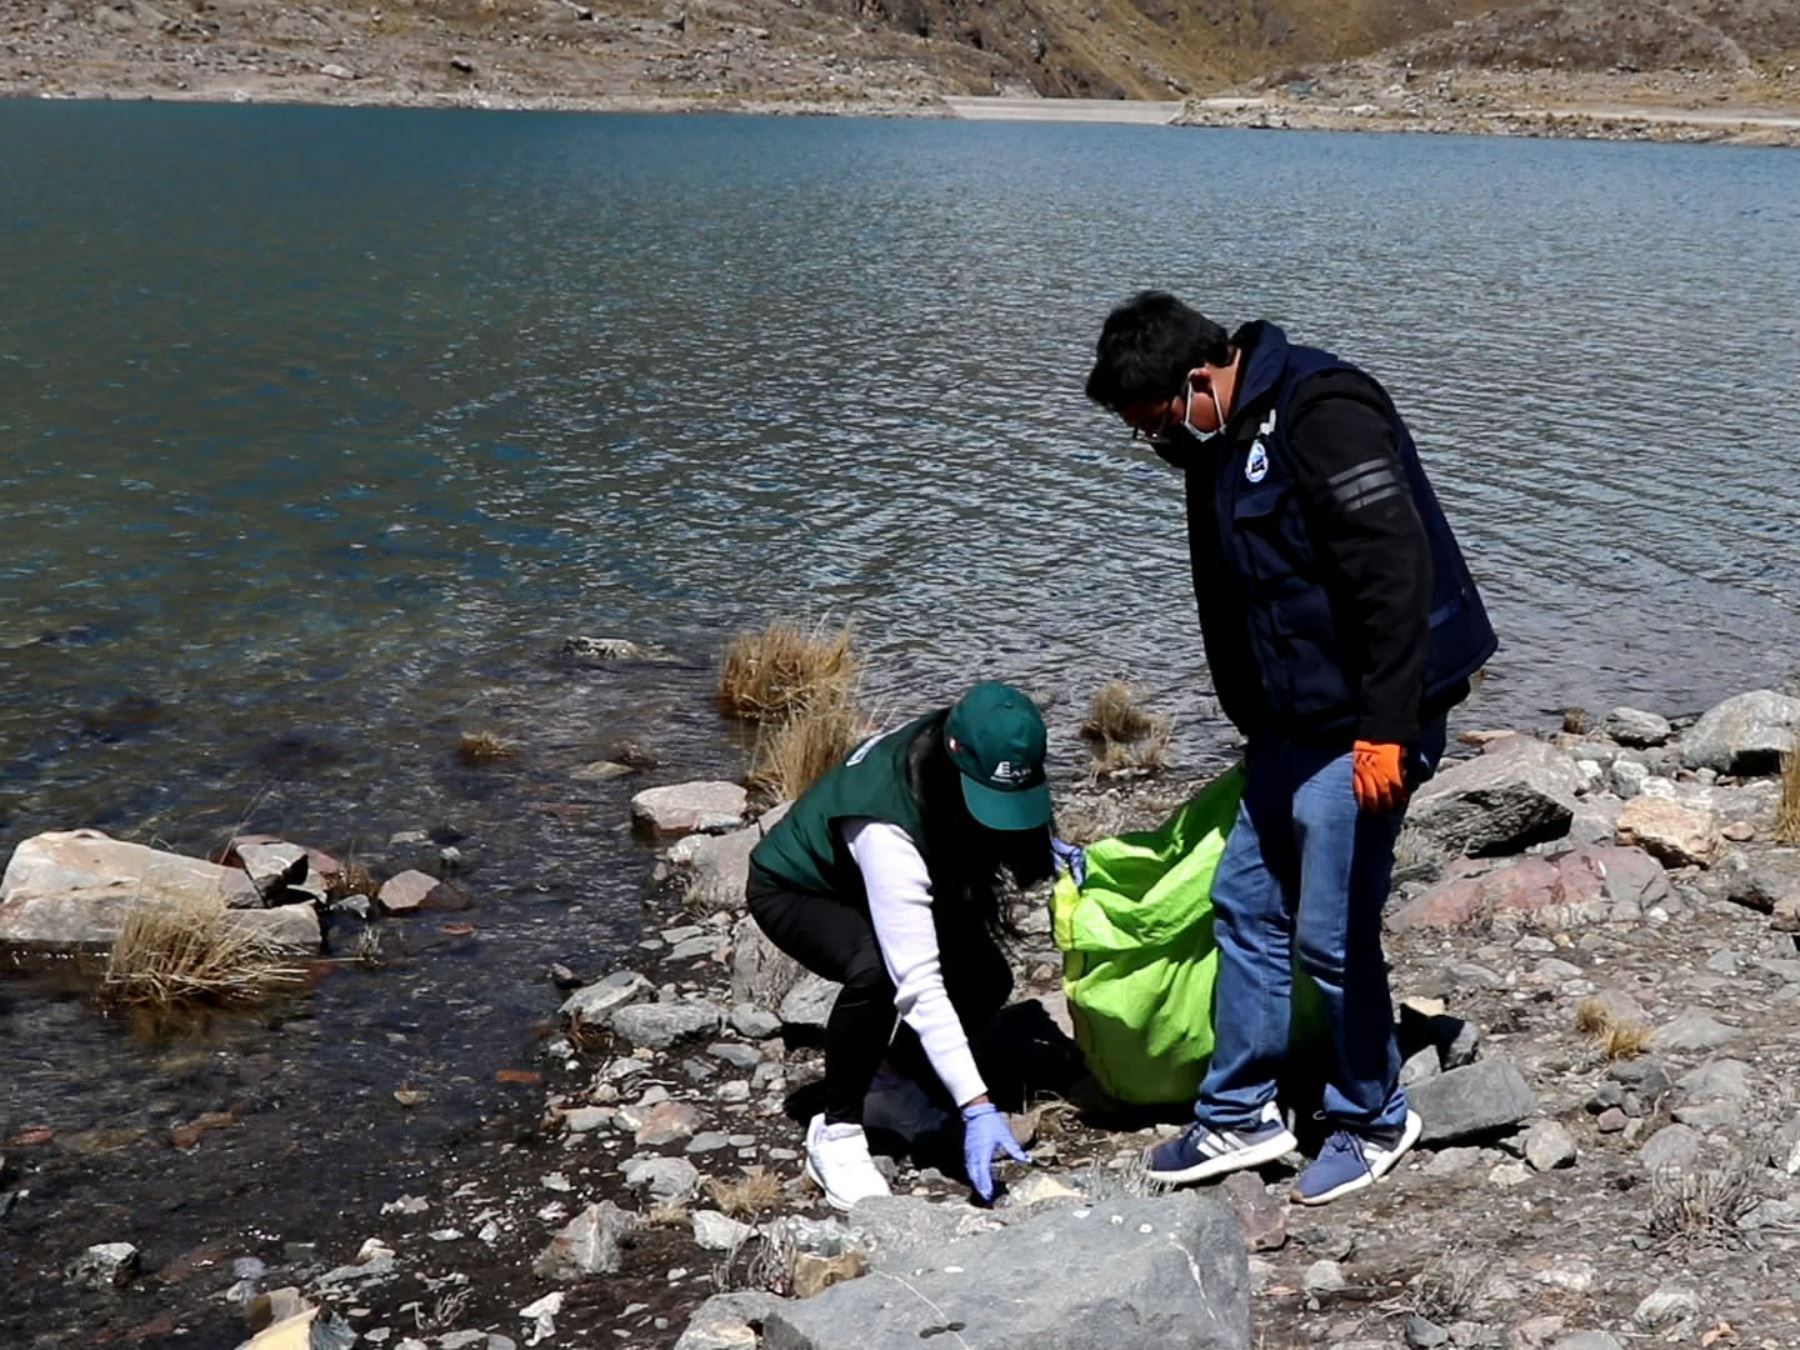 Voluntarios recogen tres toneladas de residuos sólidos durante jornada de limpieza en nevado Huaytapallana, ubicado en la provincia de Huancayo, región Junín.